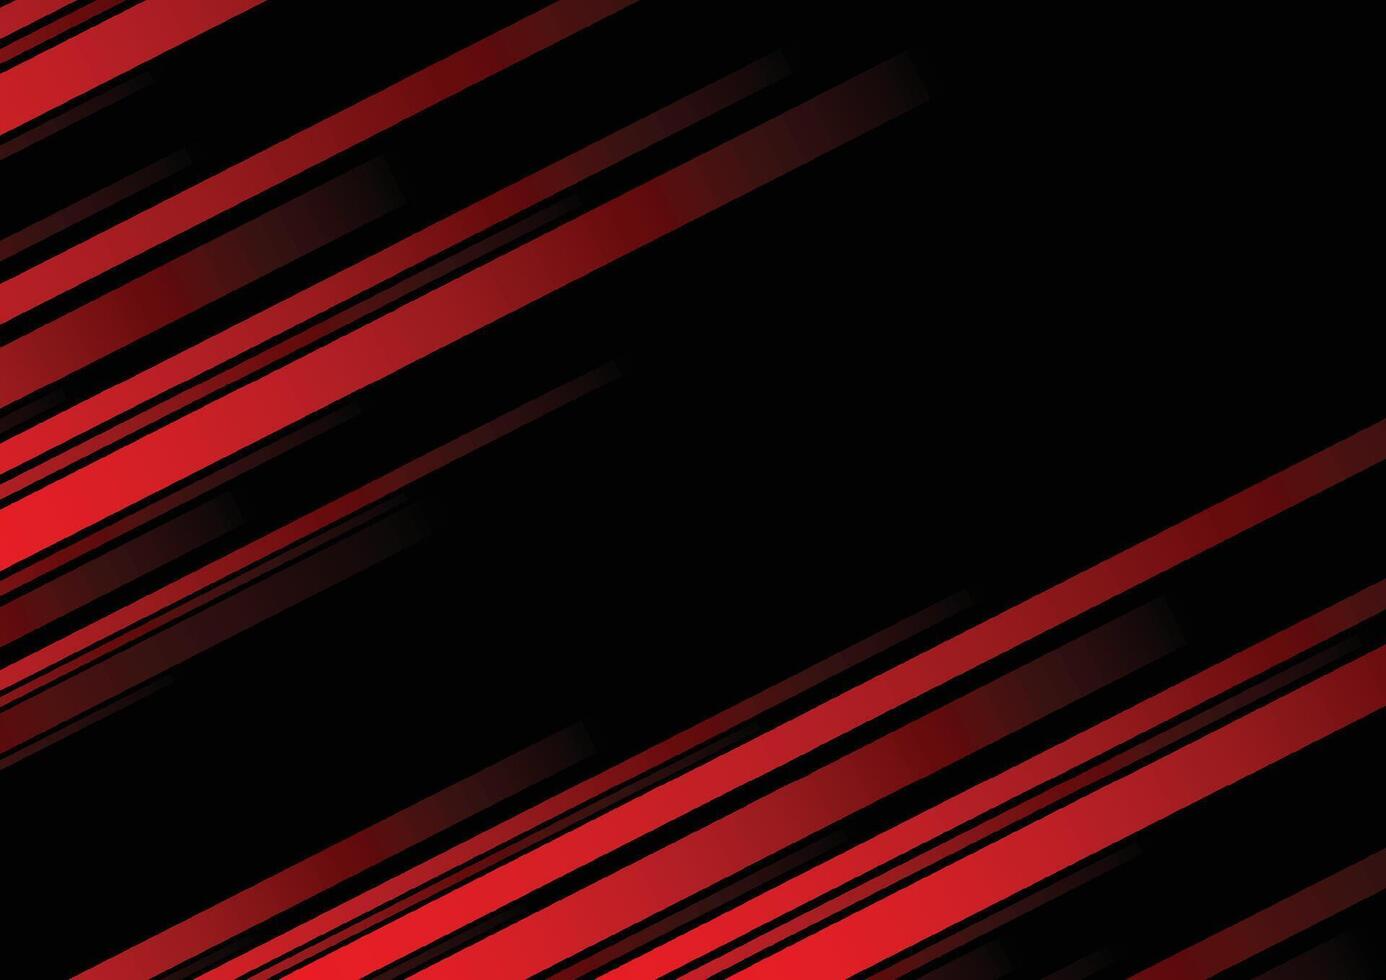 ligne rouge abstraite et fond noir pour carte de visite, couverture, bannière, flyer. illustration vectorielle vecteur